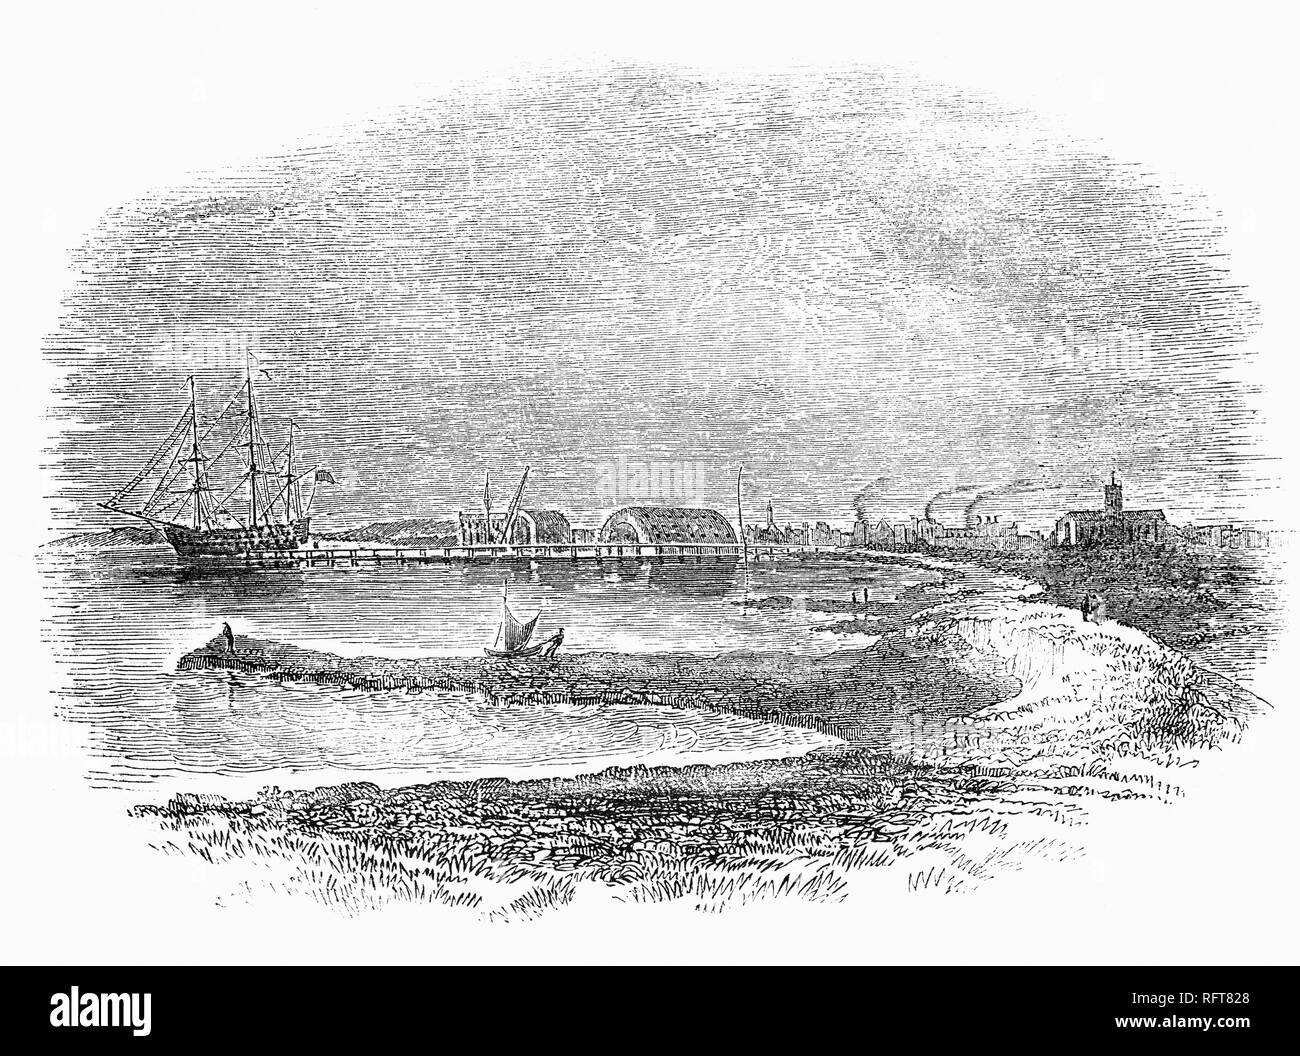 Sheerness Dockyard noto anche come Sheerness stazione era un Royal Navy Dockyard situato sulla penisola di Sheerness, alla foce del fiume Medway nel Kent aperto nel 1699s. Inizialmente ha funzionato come una estensione di Chatham e è stato concepito principalmente per la riparazione e manutenzione di navi militari e la costruzione navale non ha avuto luogo fino al 1691. Il primo un bacino di carenaggio fu completato nel 1708; un secondo è stato aggiunto nel 1720 con accesso attraverso un bacino di marea, noto come il fango Dock. Il cantiere navale ha iniziato ad espandersi e dal 1800 era Dockyard riempito tutto lo spazio disponibile. Foto Stock